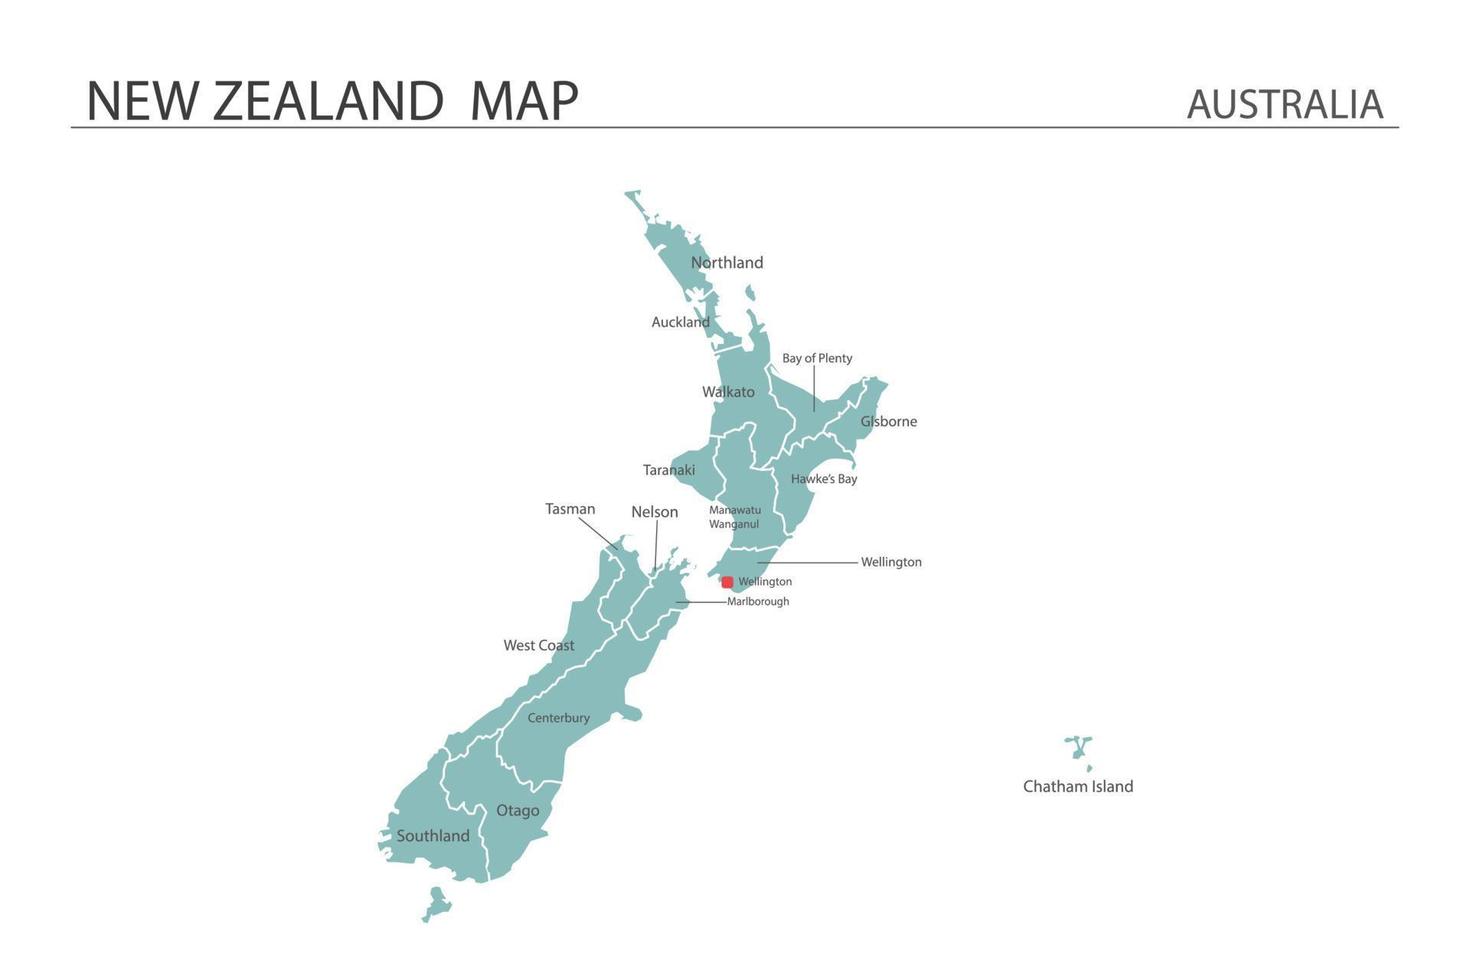 vector de mapa de nueva zelanda sobre fondo blanco. el mapa tiene toda la provincia y marca la ciudad capital de nueva zelanda.